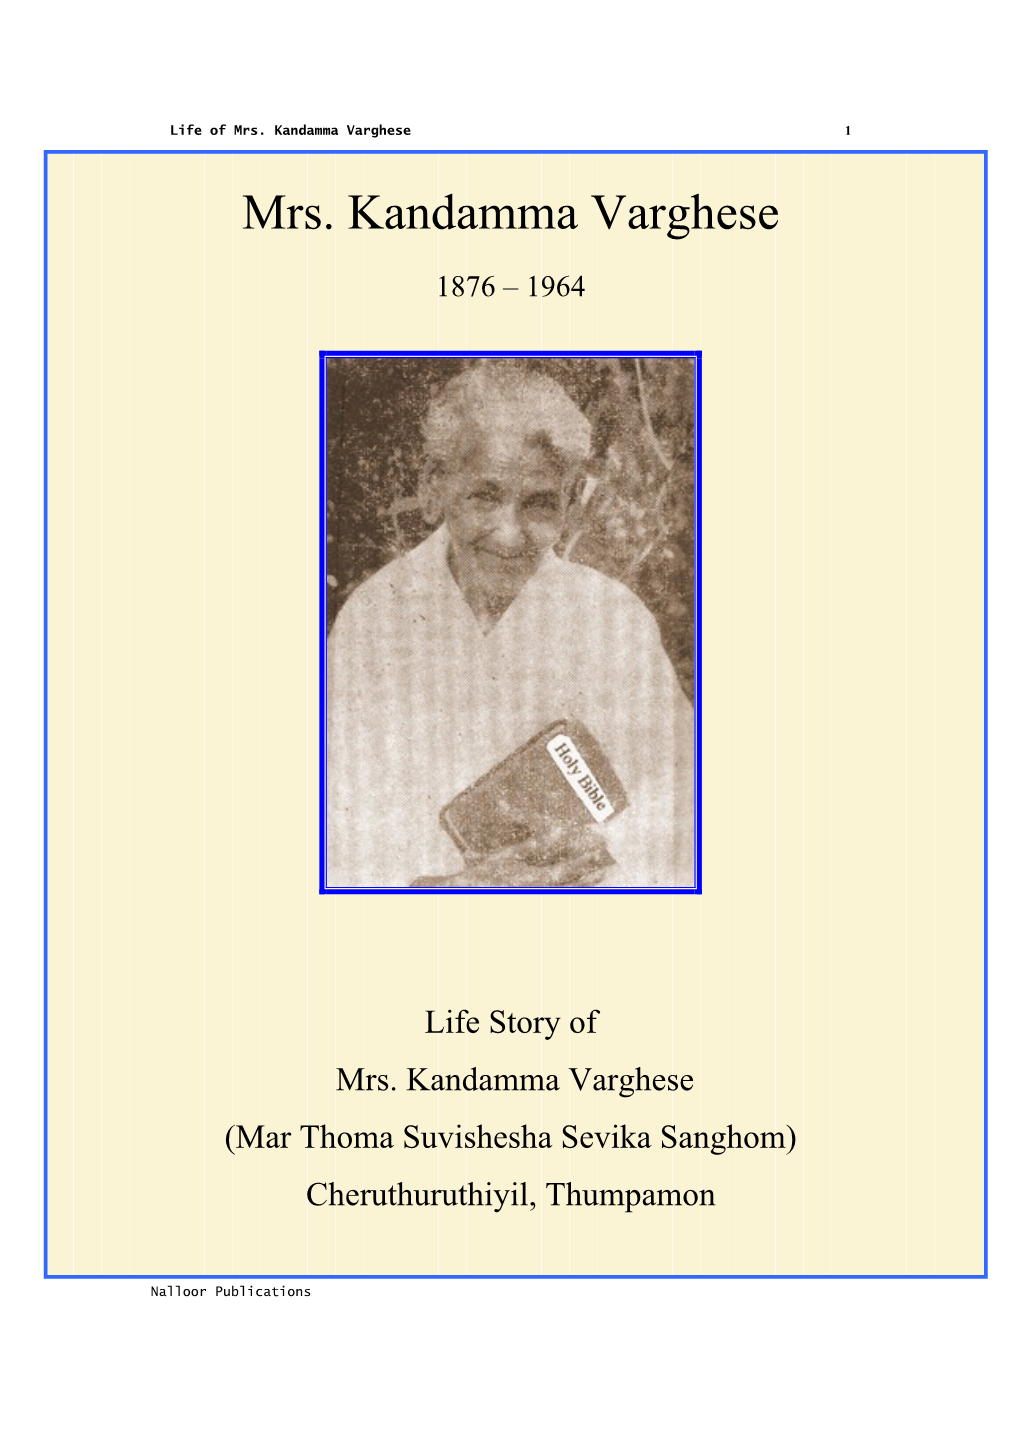 Mrs. Kandamma Varghese 1